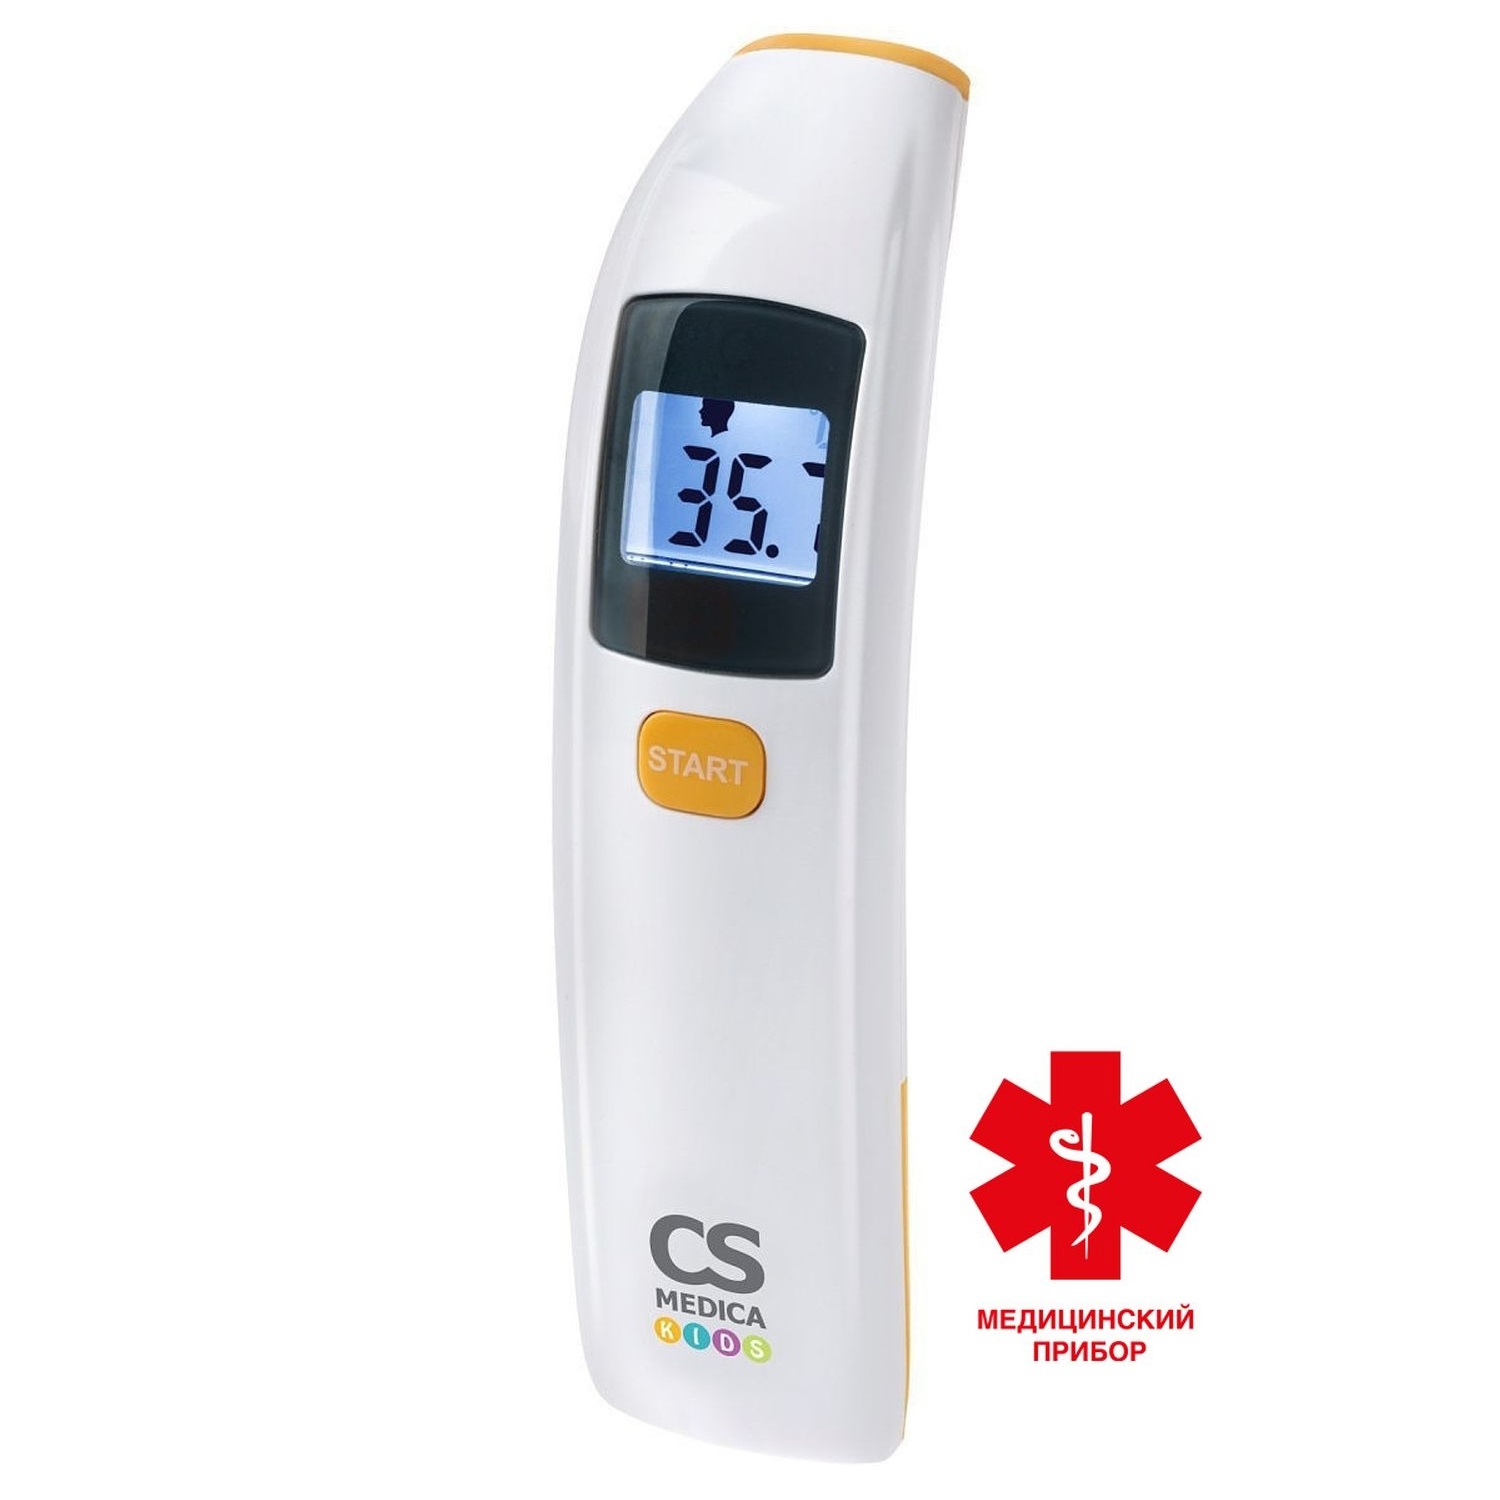 цена СиЭс Медика термометр электронный медицинский бесконтактный CS-88